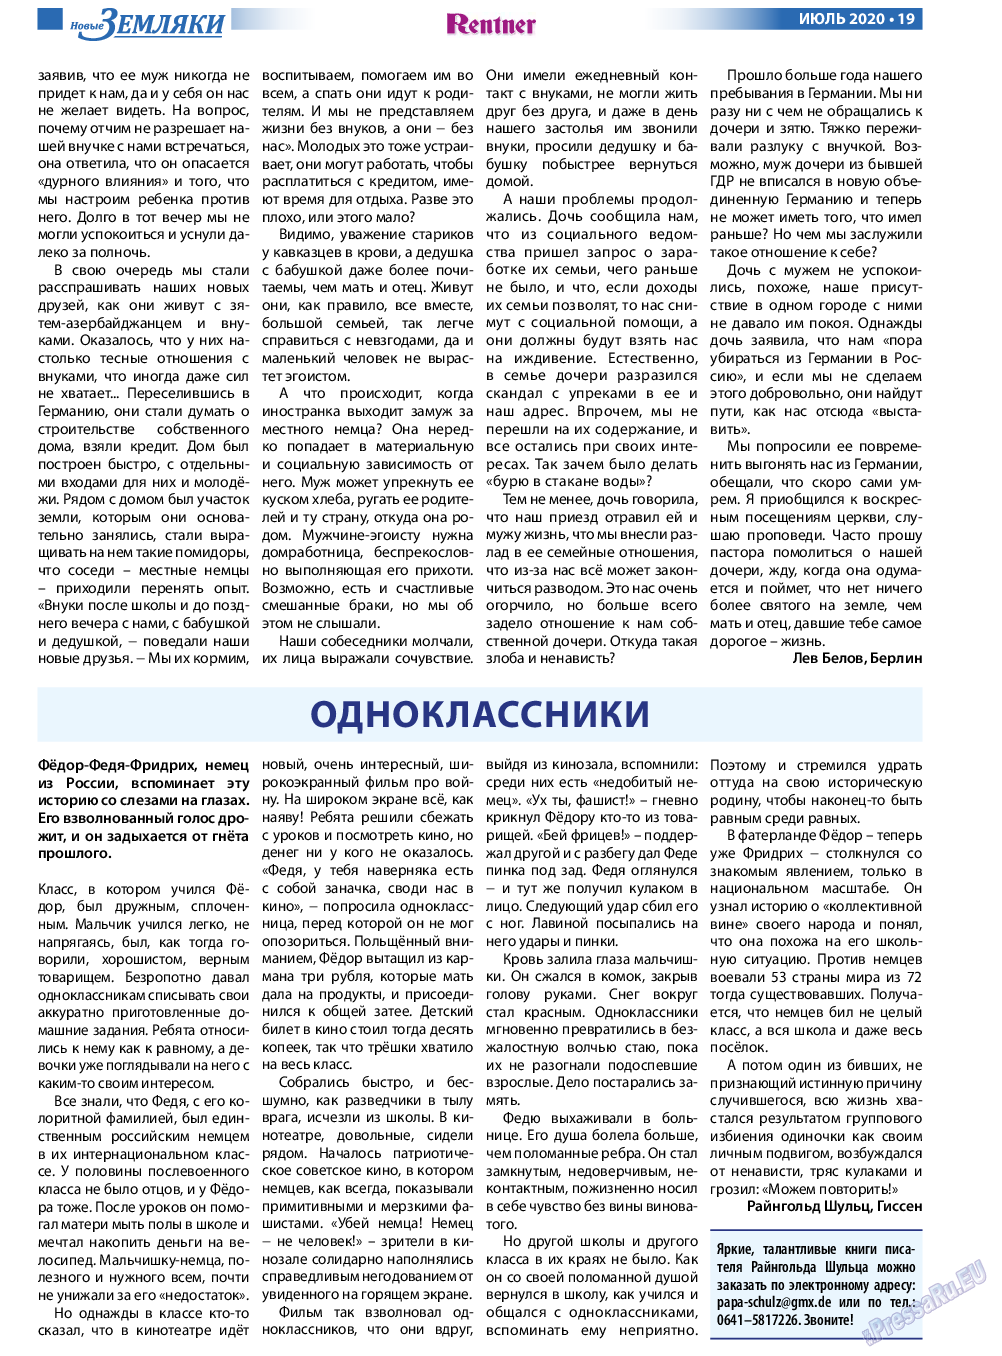 Новые Земляки (газета). 2020 год, номер 7, стр. 19